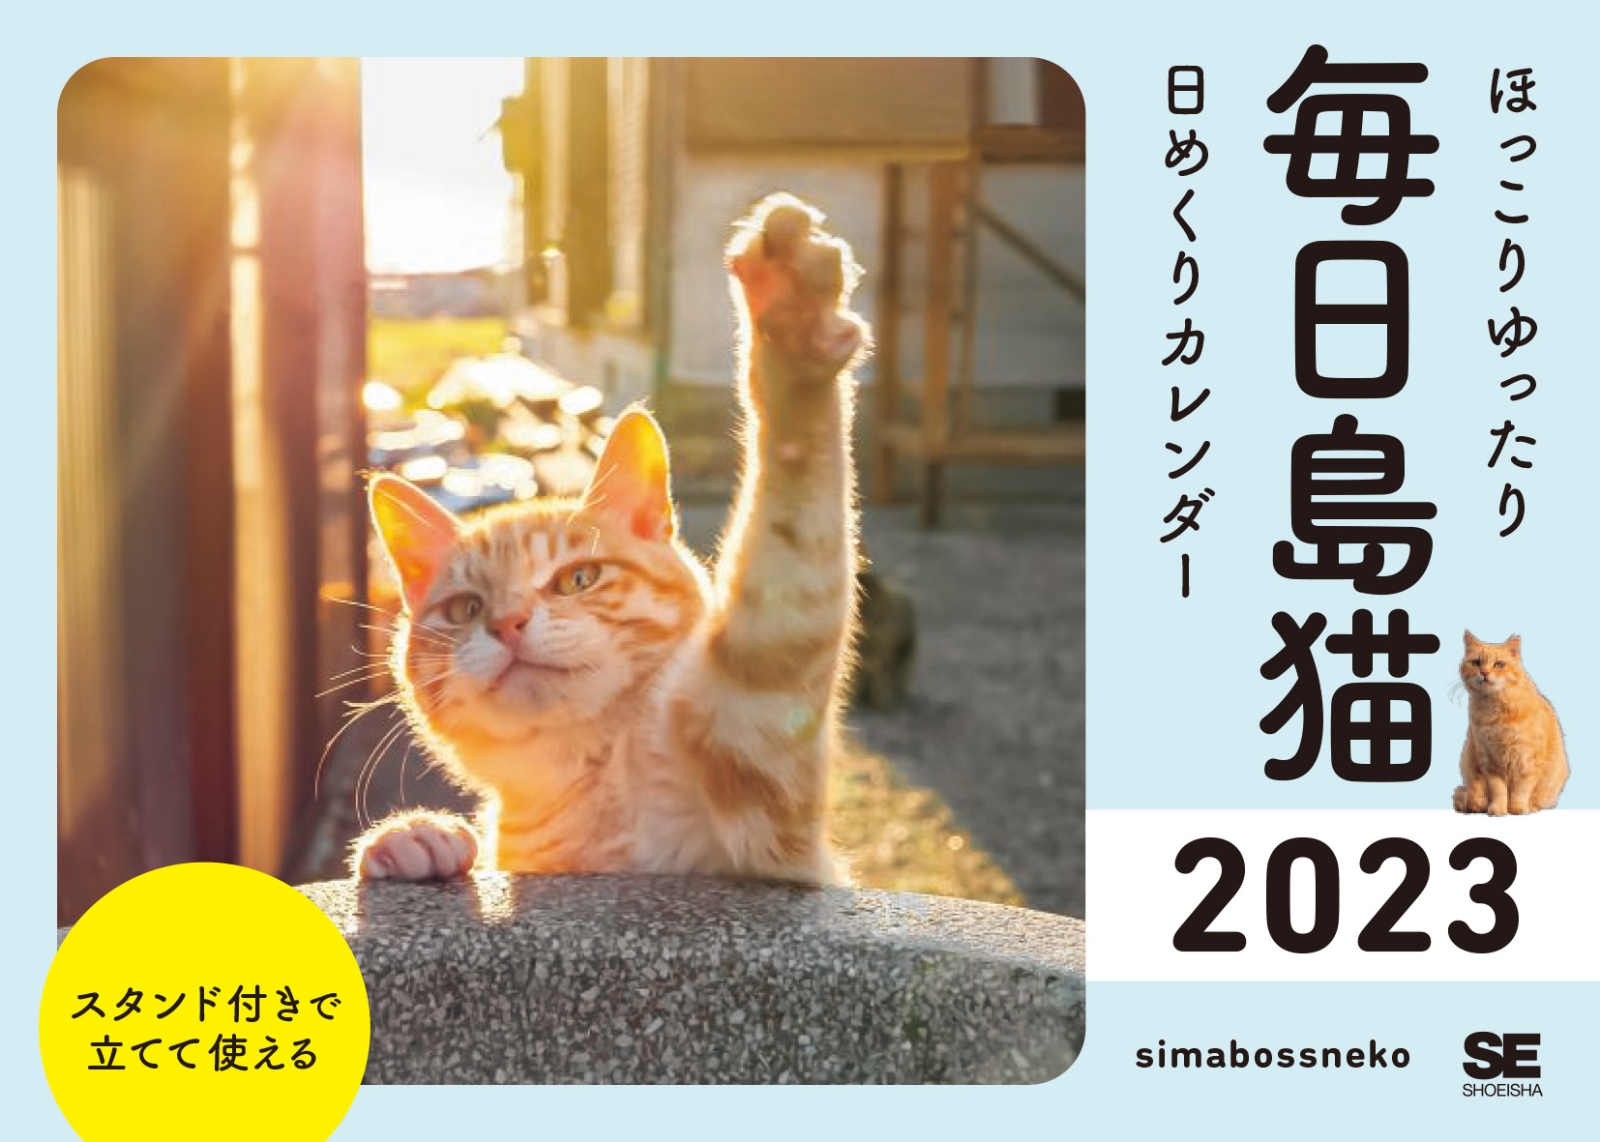 楽天ブックス 楽天ブックス限定特典 ほっこりゆったり毎日島猫 日めくりカレンダー 23 スマートフォン用壁紙 Simabossneko 本